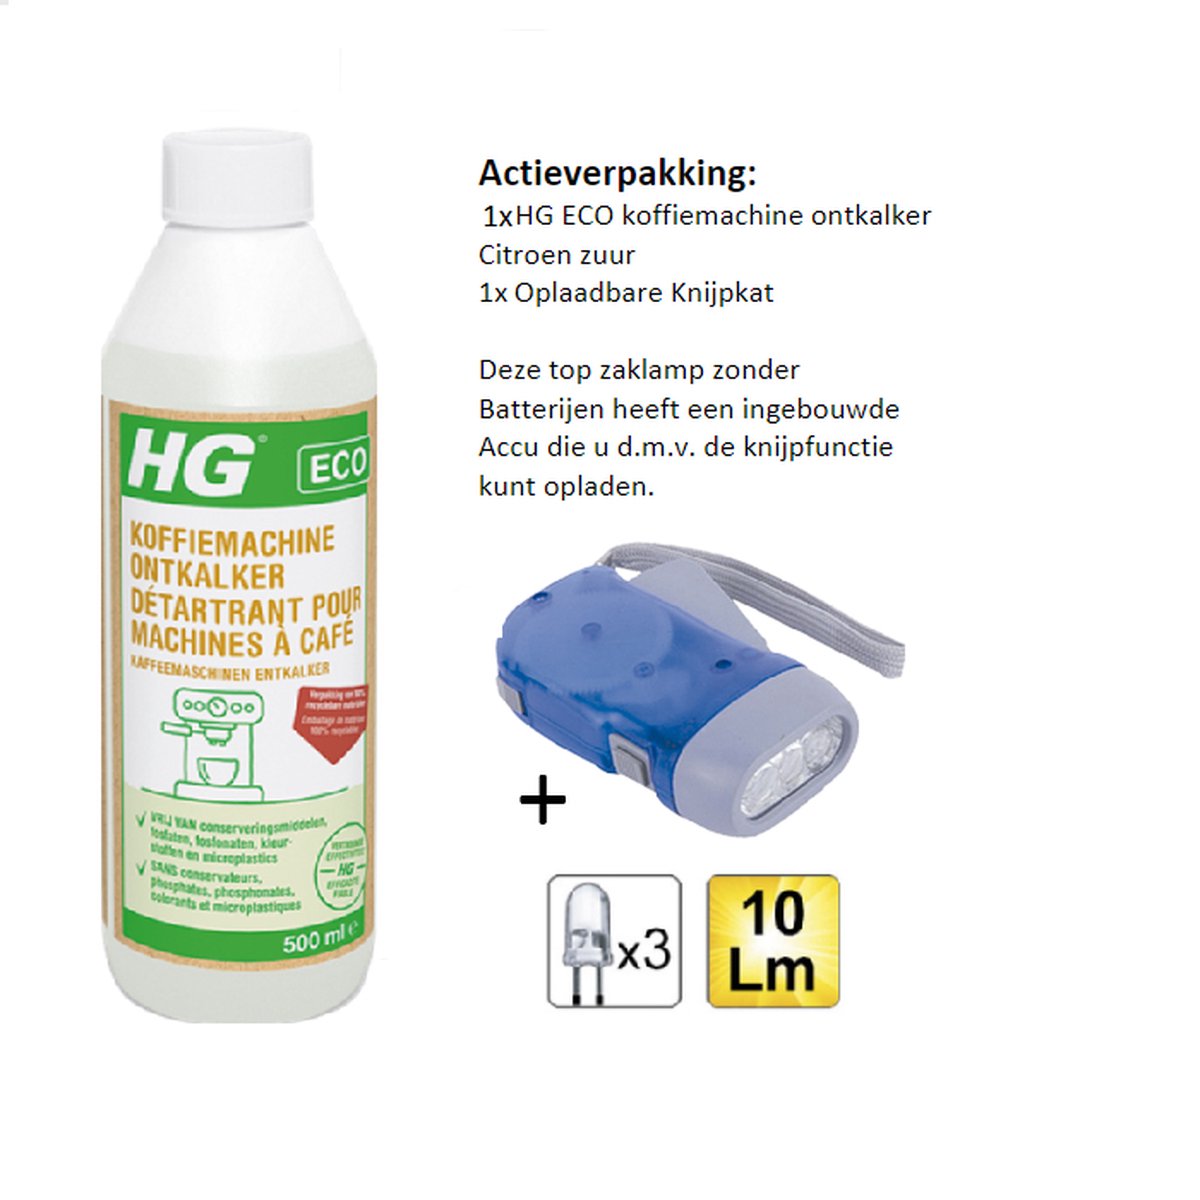 HG eco détartrant pour machine à café acide citrique - 1 pièce